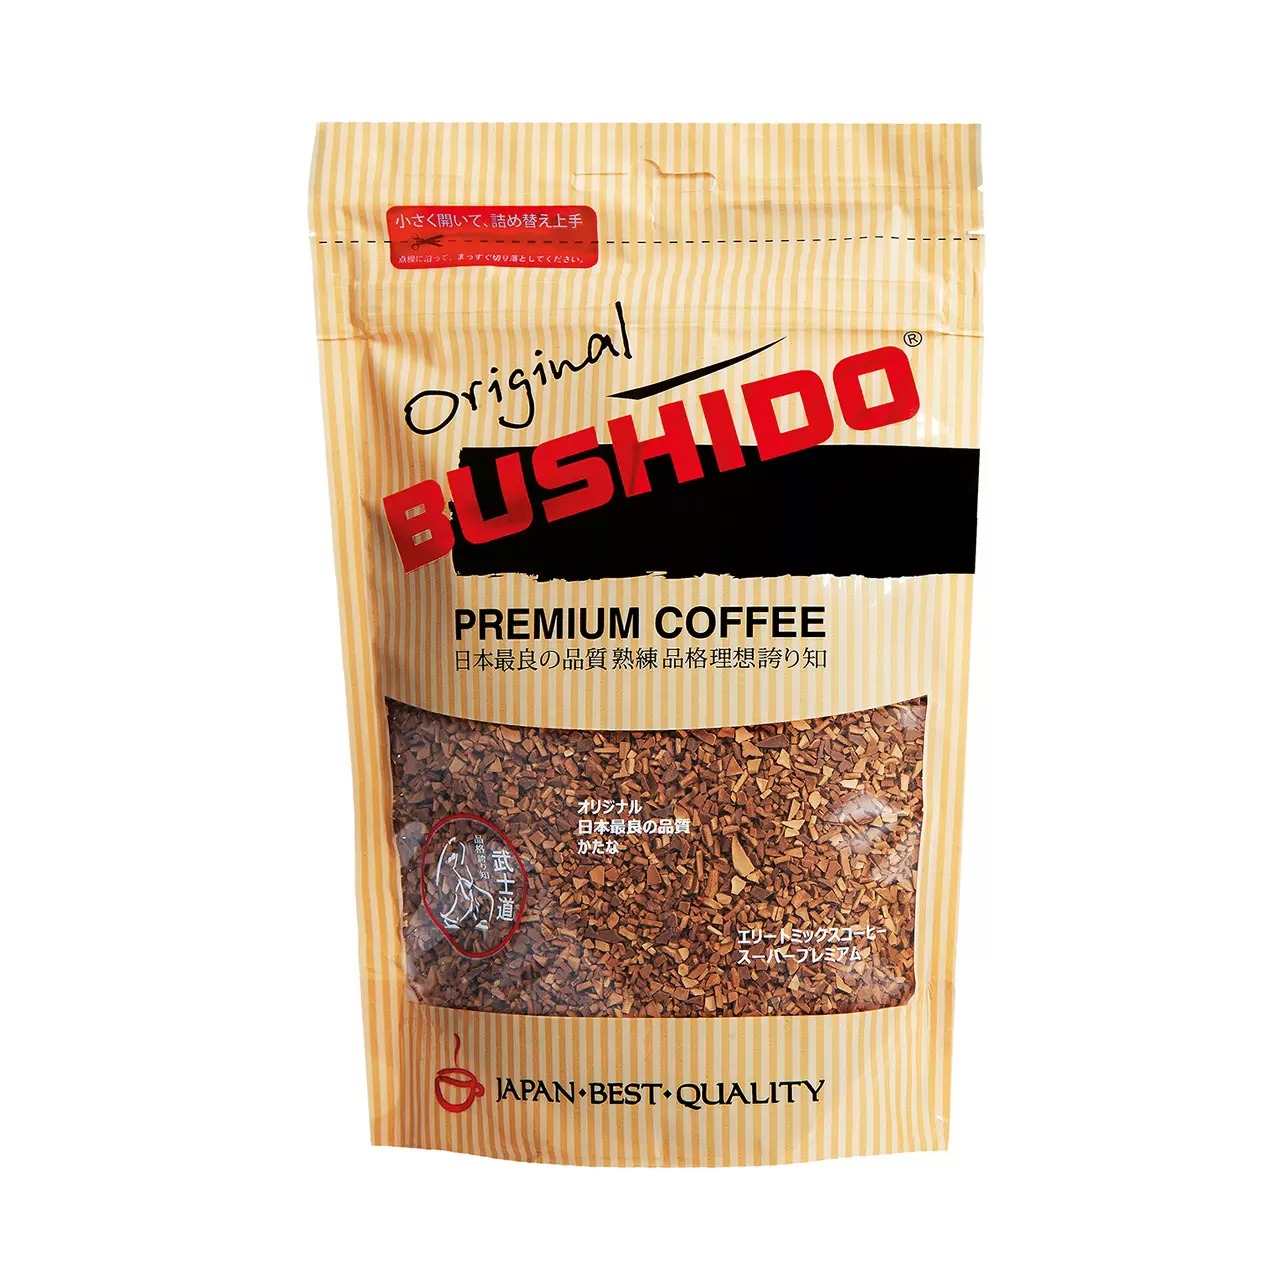 Кофе BUSHIDO Original сублимированный, 75 г кофе растворимый bushido original натуральный сублимированный 75 г